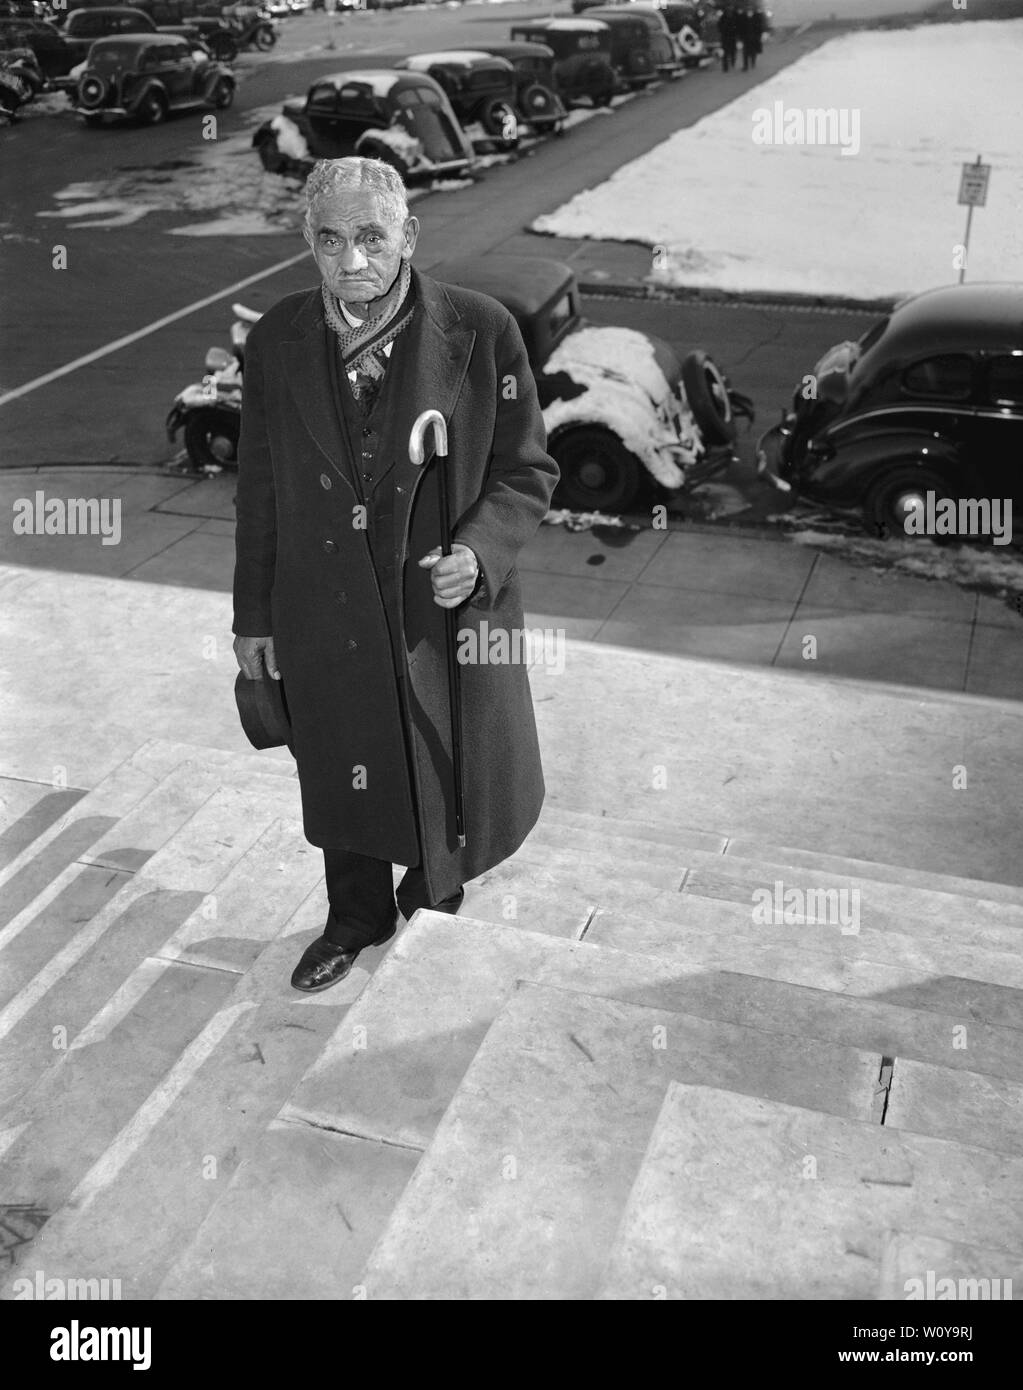 William Andrew Johnson, ancien esclave de l'ancien président Andrew Johnson, qui a été présenté avec une canne d'argent géré par le président Roosevelt, portrait sur les étapes du Capitole au cours de sa visite à Washington DC. USA, Harris et Ewing, 1937 Banque D'Images